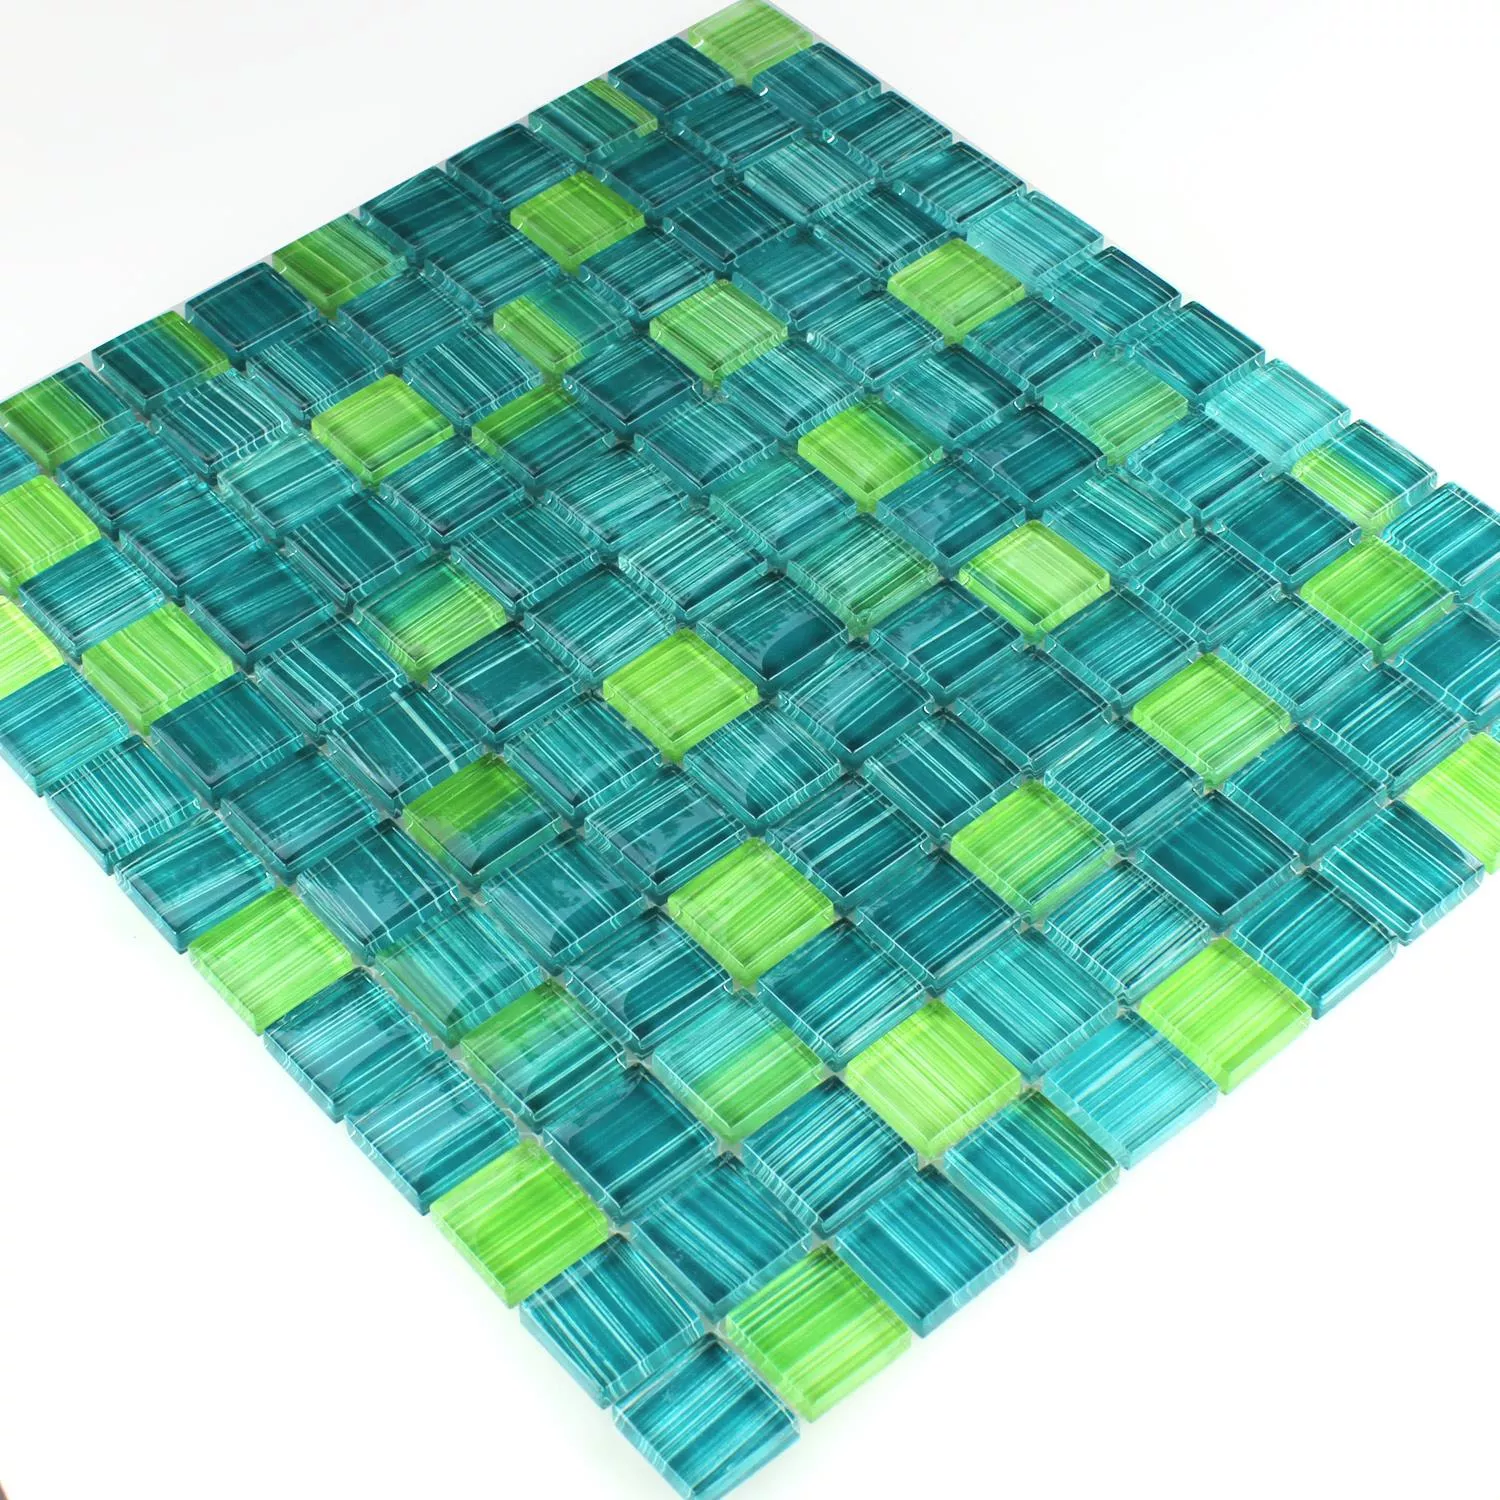 Azulejo Mosaico Listrado Vidro Cristal Verde